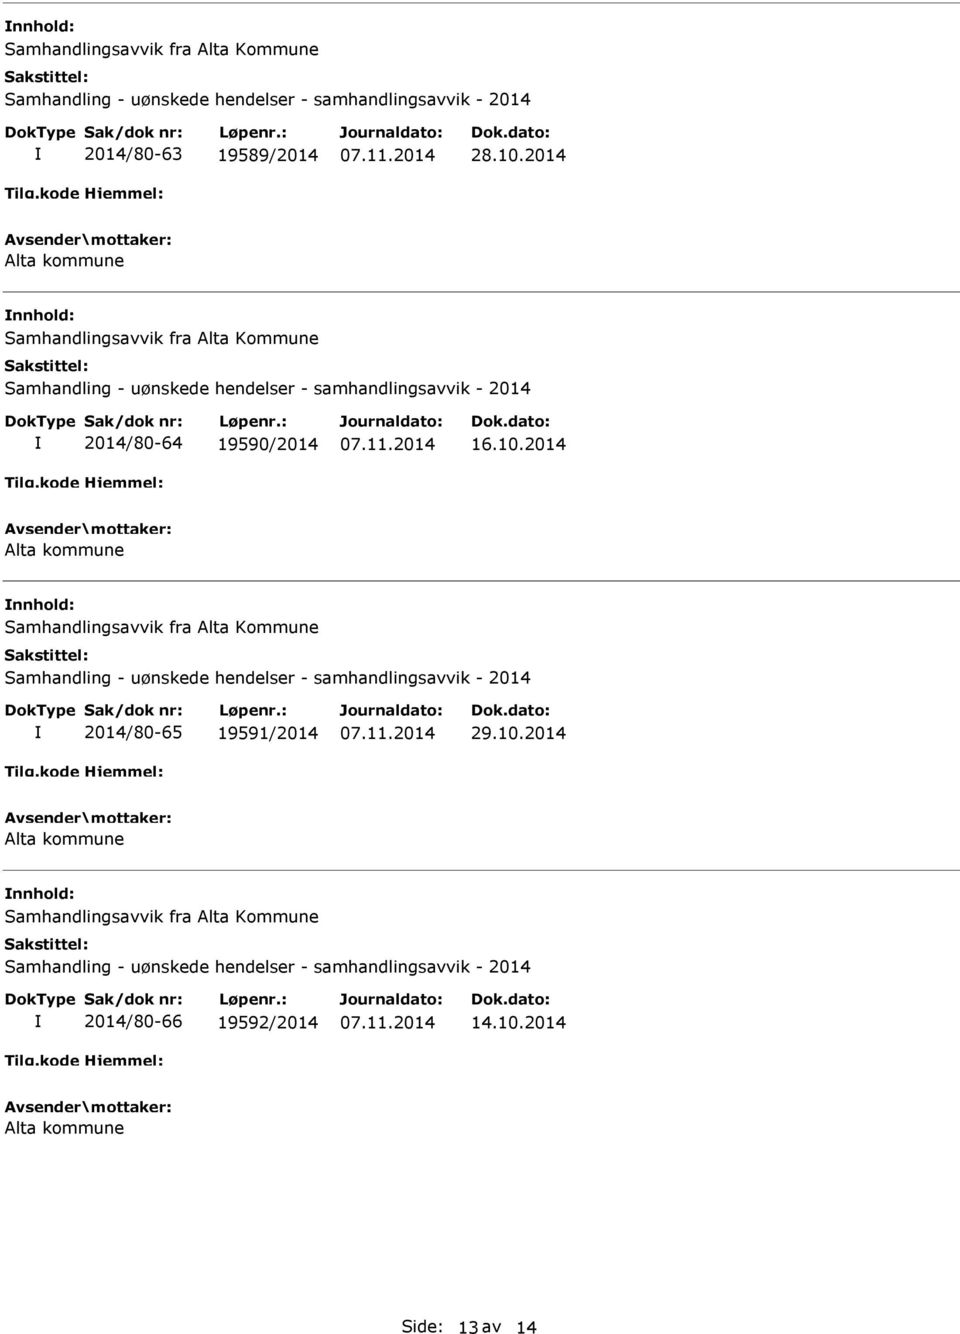 2014 Alta kommune nnhold: Samhandlingsavvik fra Alta Kommune Samhandling - uønskede hendelser - samhandlingsavvik - 2014 2014/80-65 19591/2014 29.10.